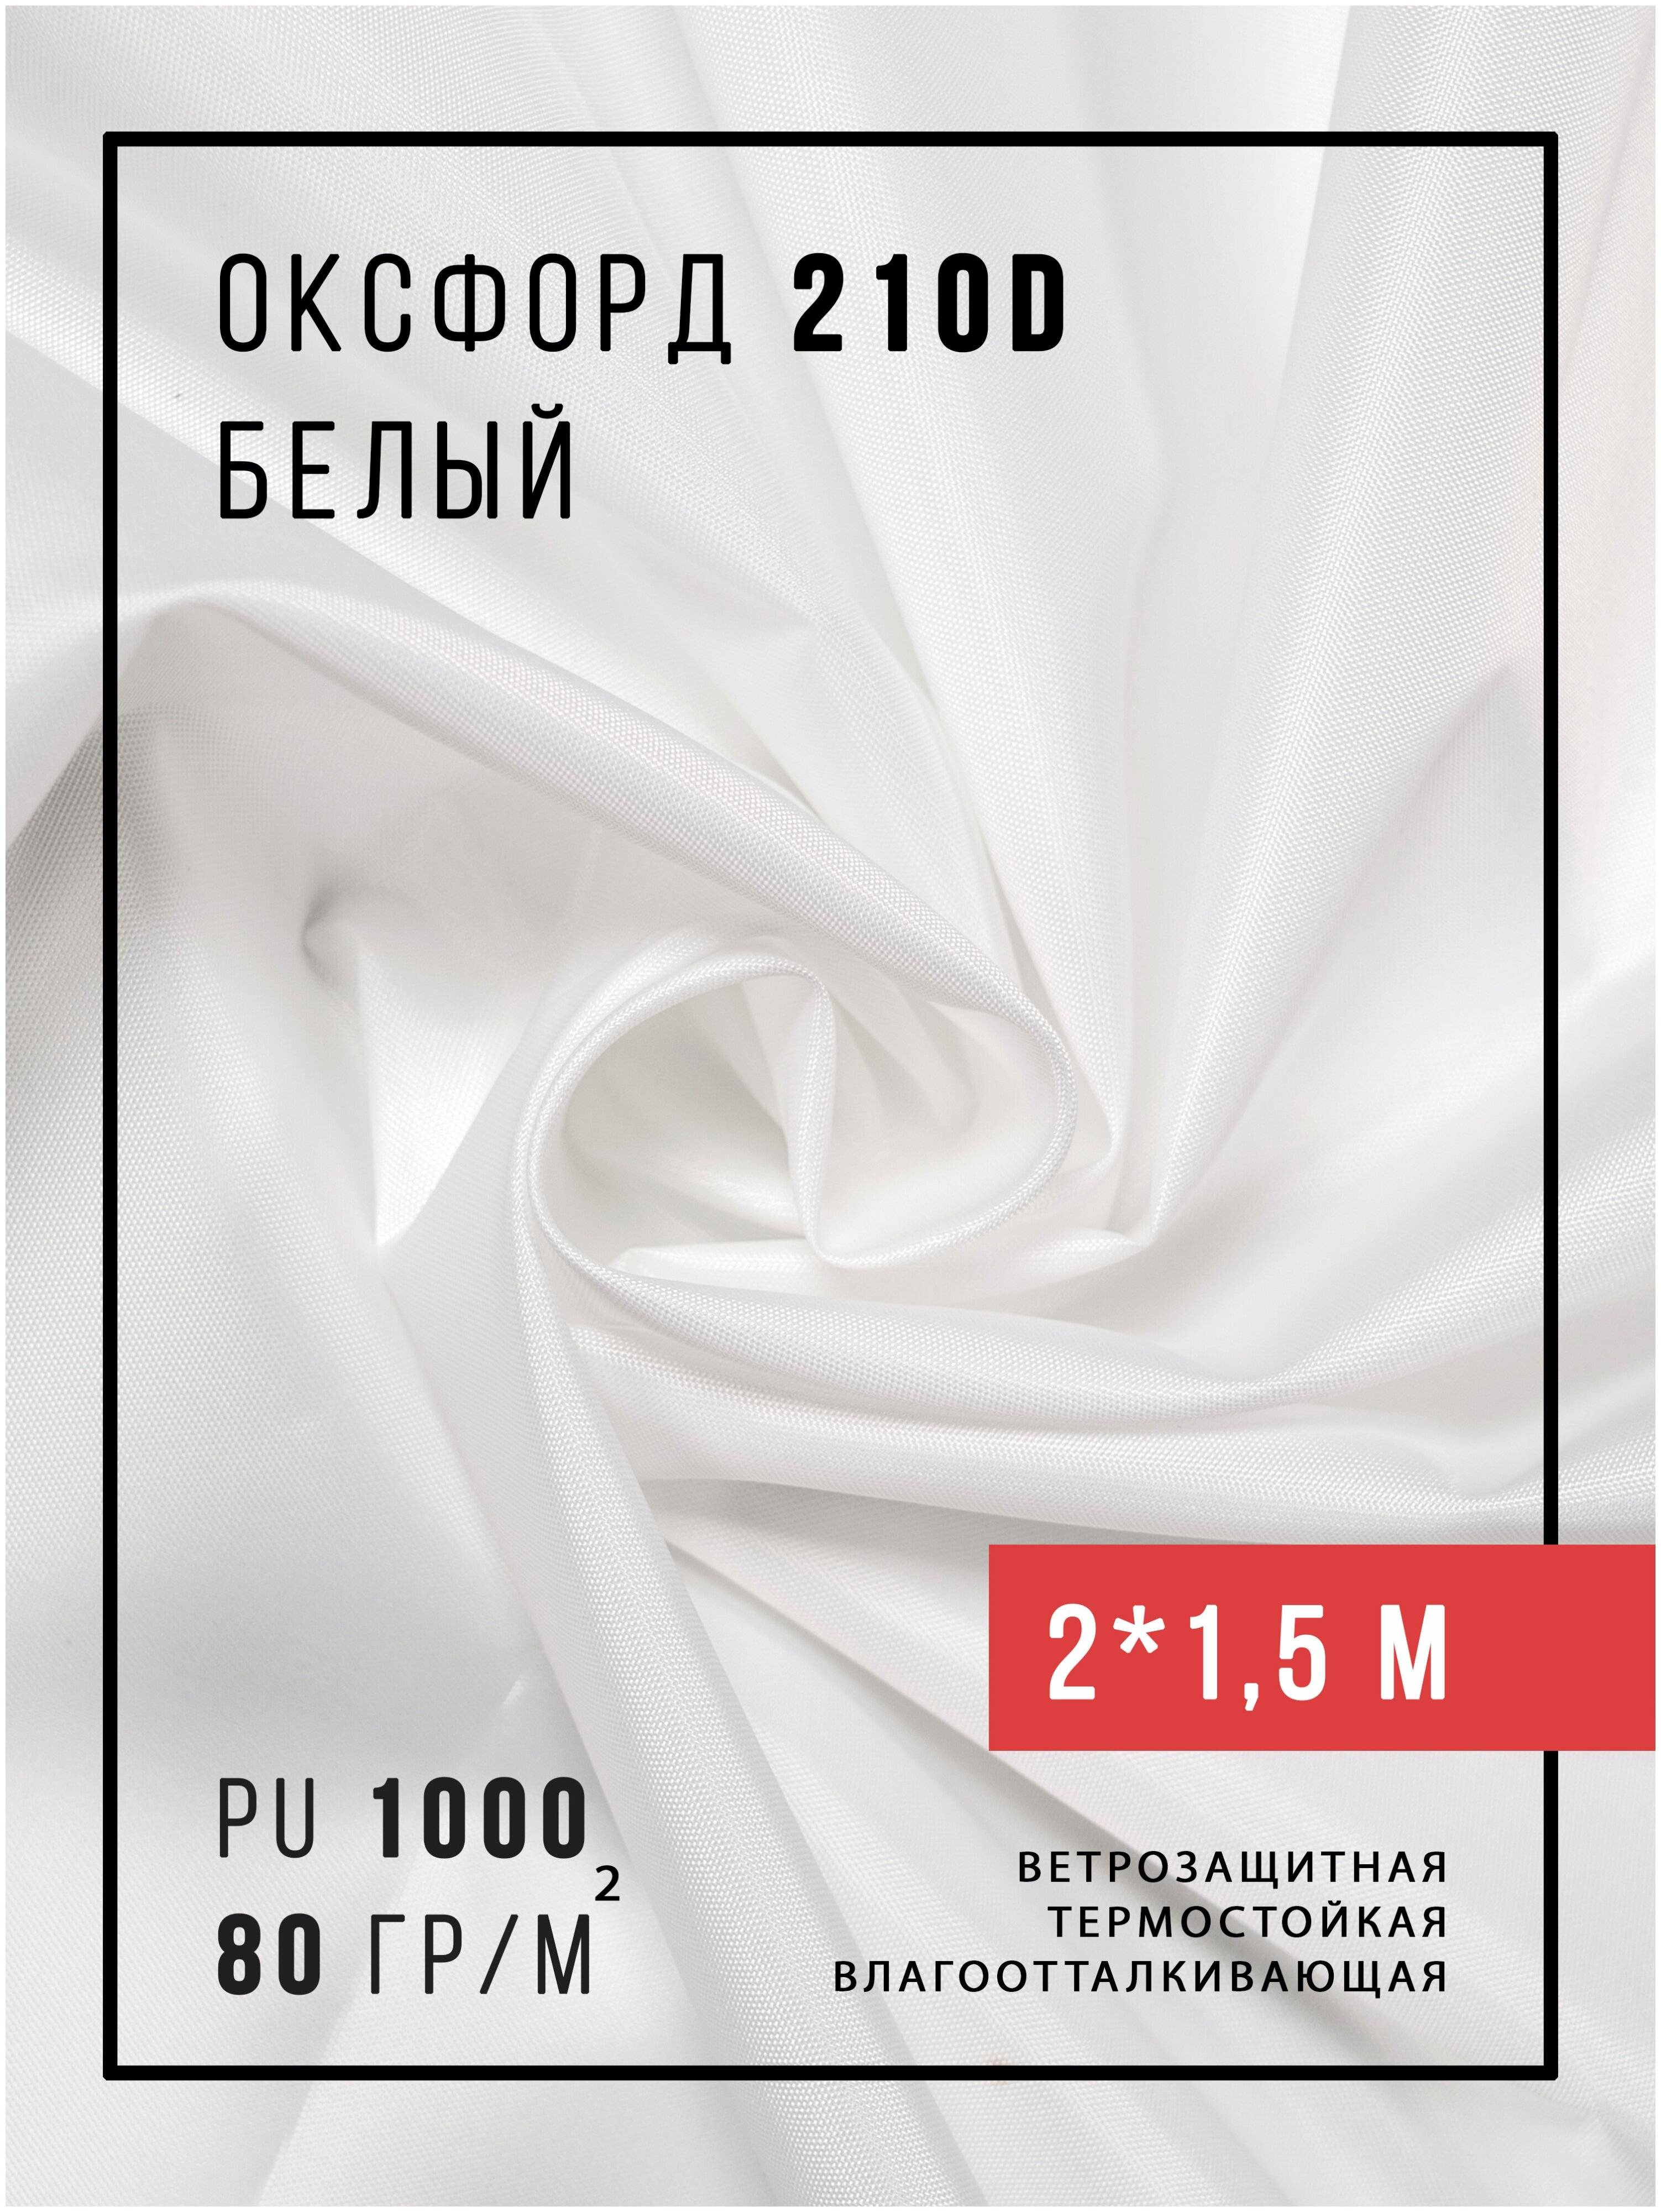 Ткань блэкаут: состав, свойства, применение, отзывы. светонепроницаемые ткани :: syl.ru